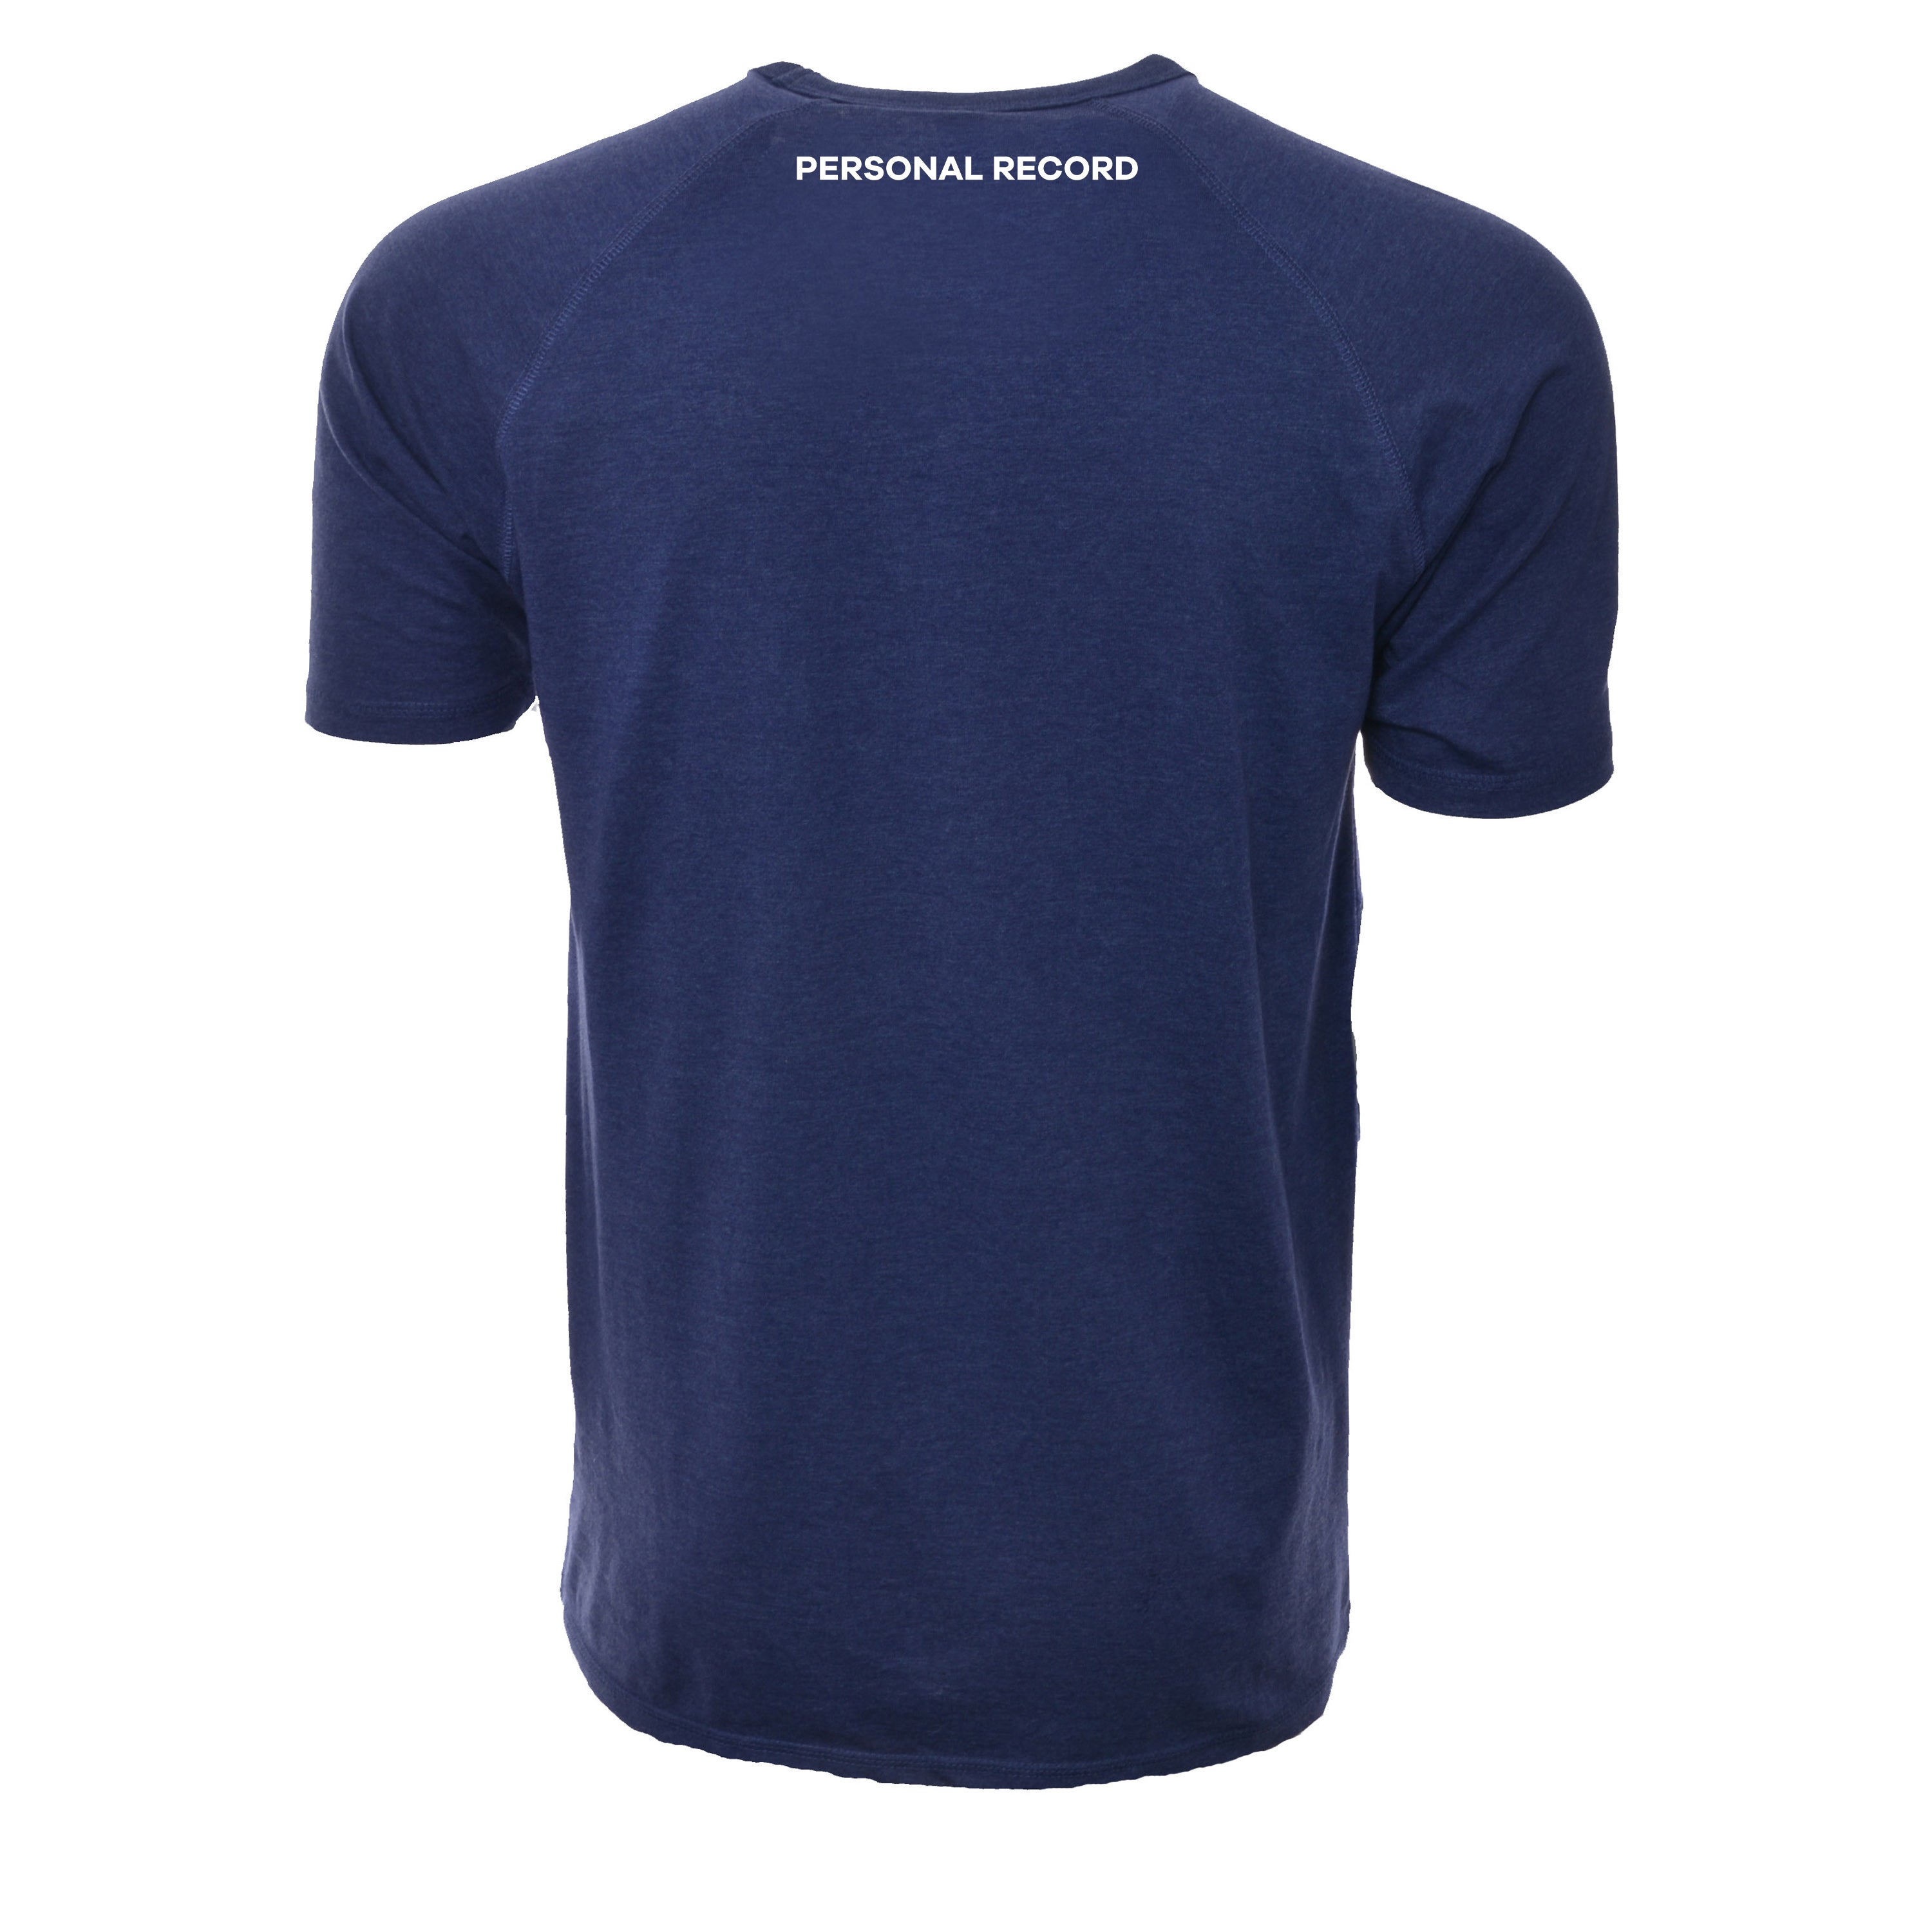 PR Raglan Tech Shirts - PR402 - Blue